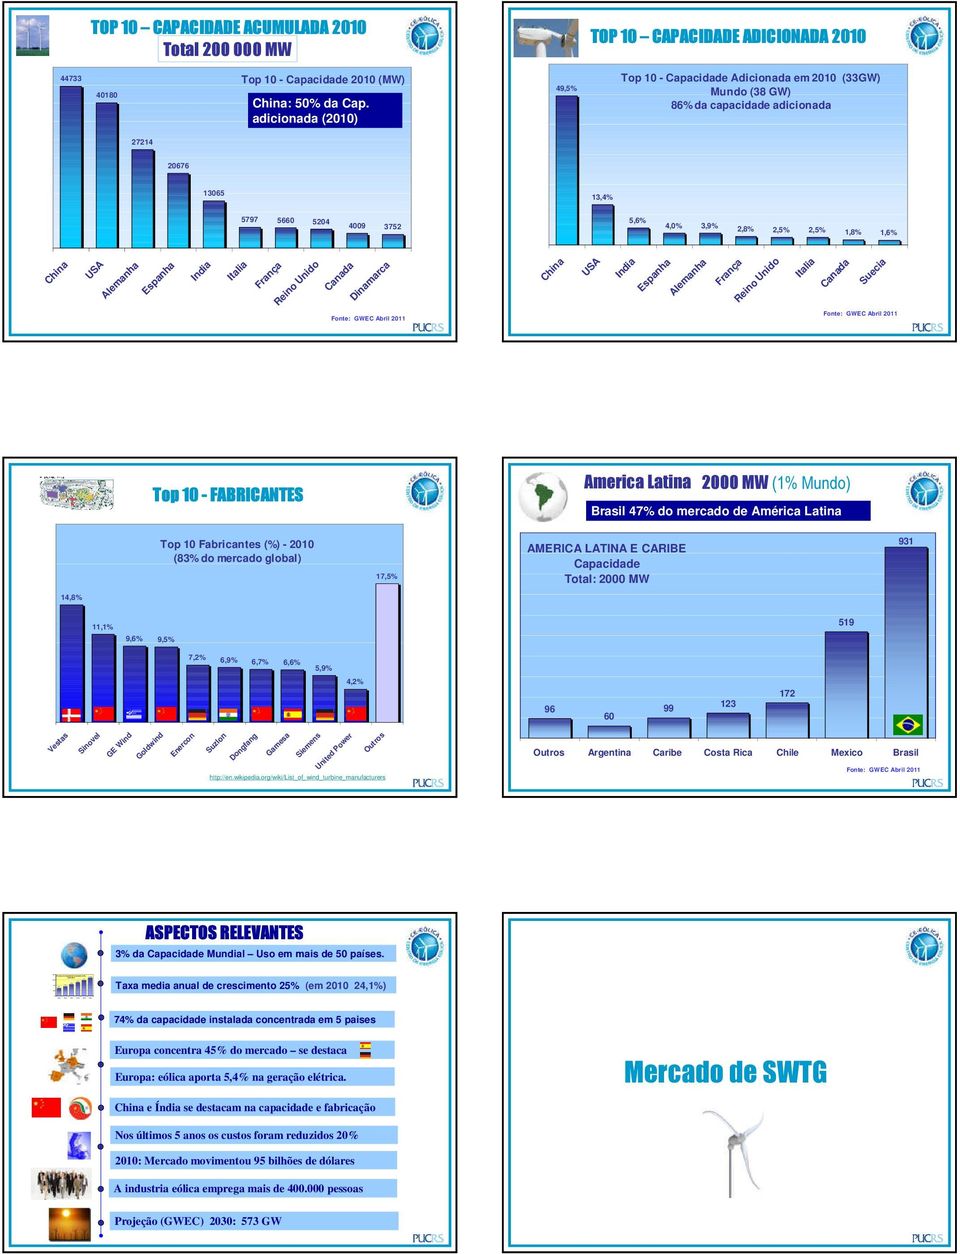 adicionada (2010) 49,5% TOP 10 CAPACIDADE ADICIONADA 2010 Em Top 200810 foram - Capacidade adicionados Adicionada 27 056 em MW 2010 (33GW) Mundo (38 GW) 86% da capacidade adicionada 20676 13065 13,4%